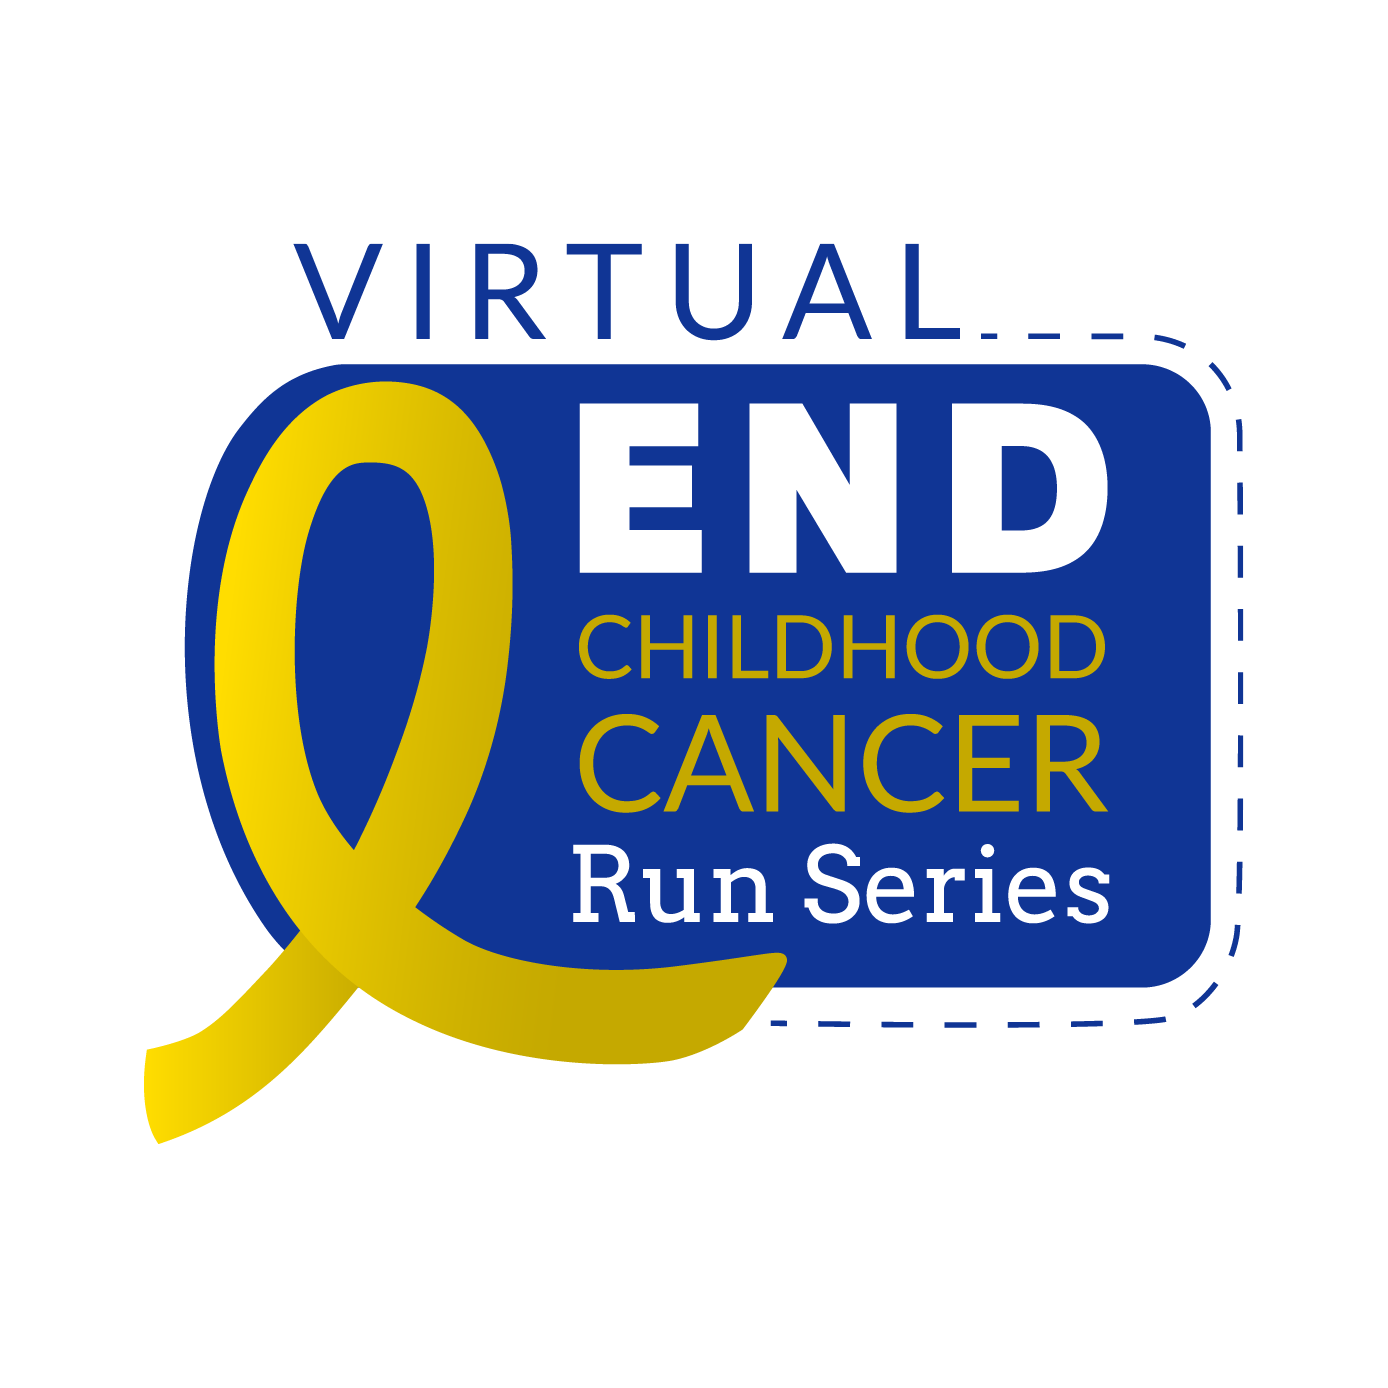 Virtual End Childhood Cancer Run Series